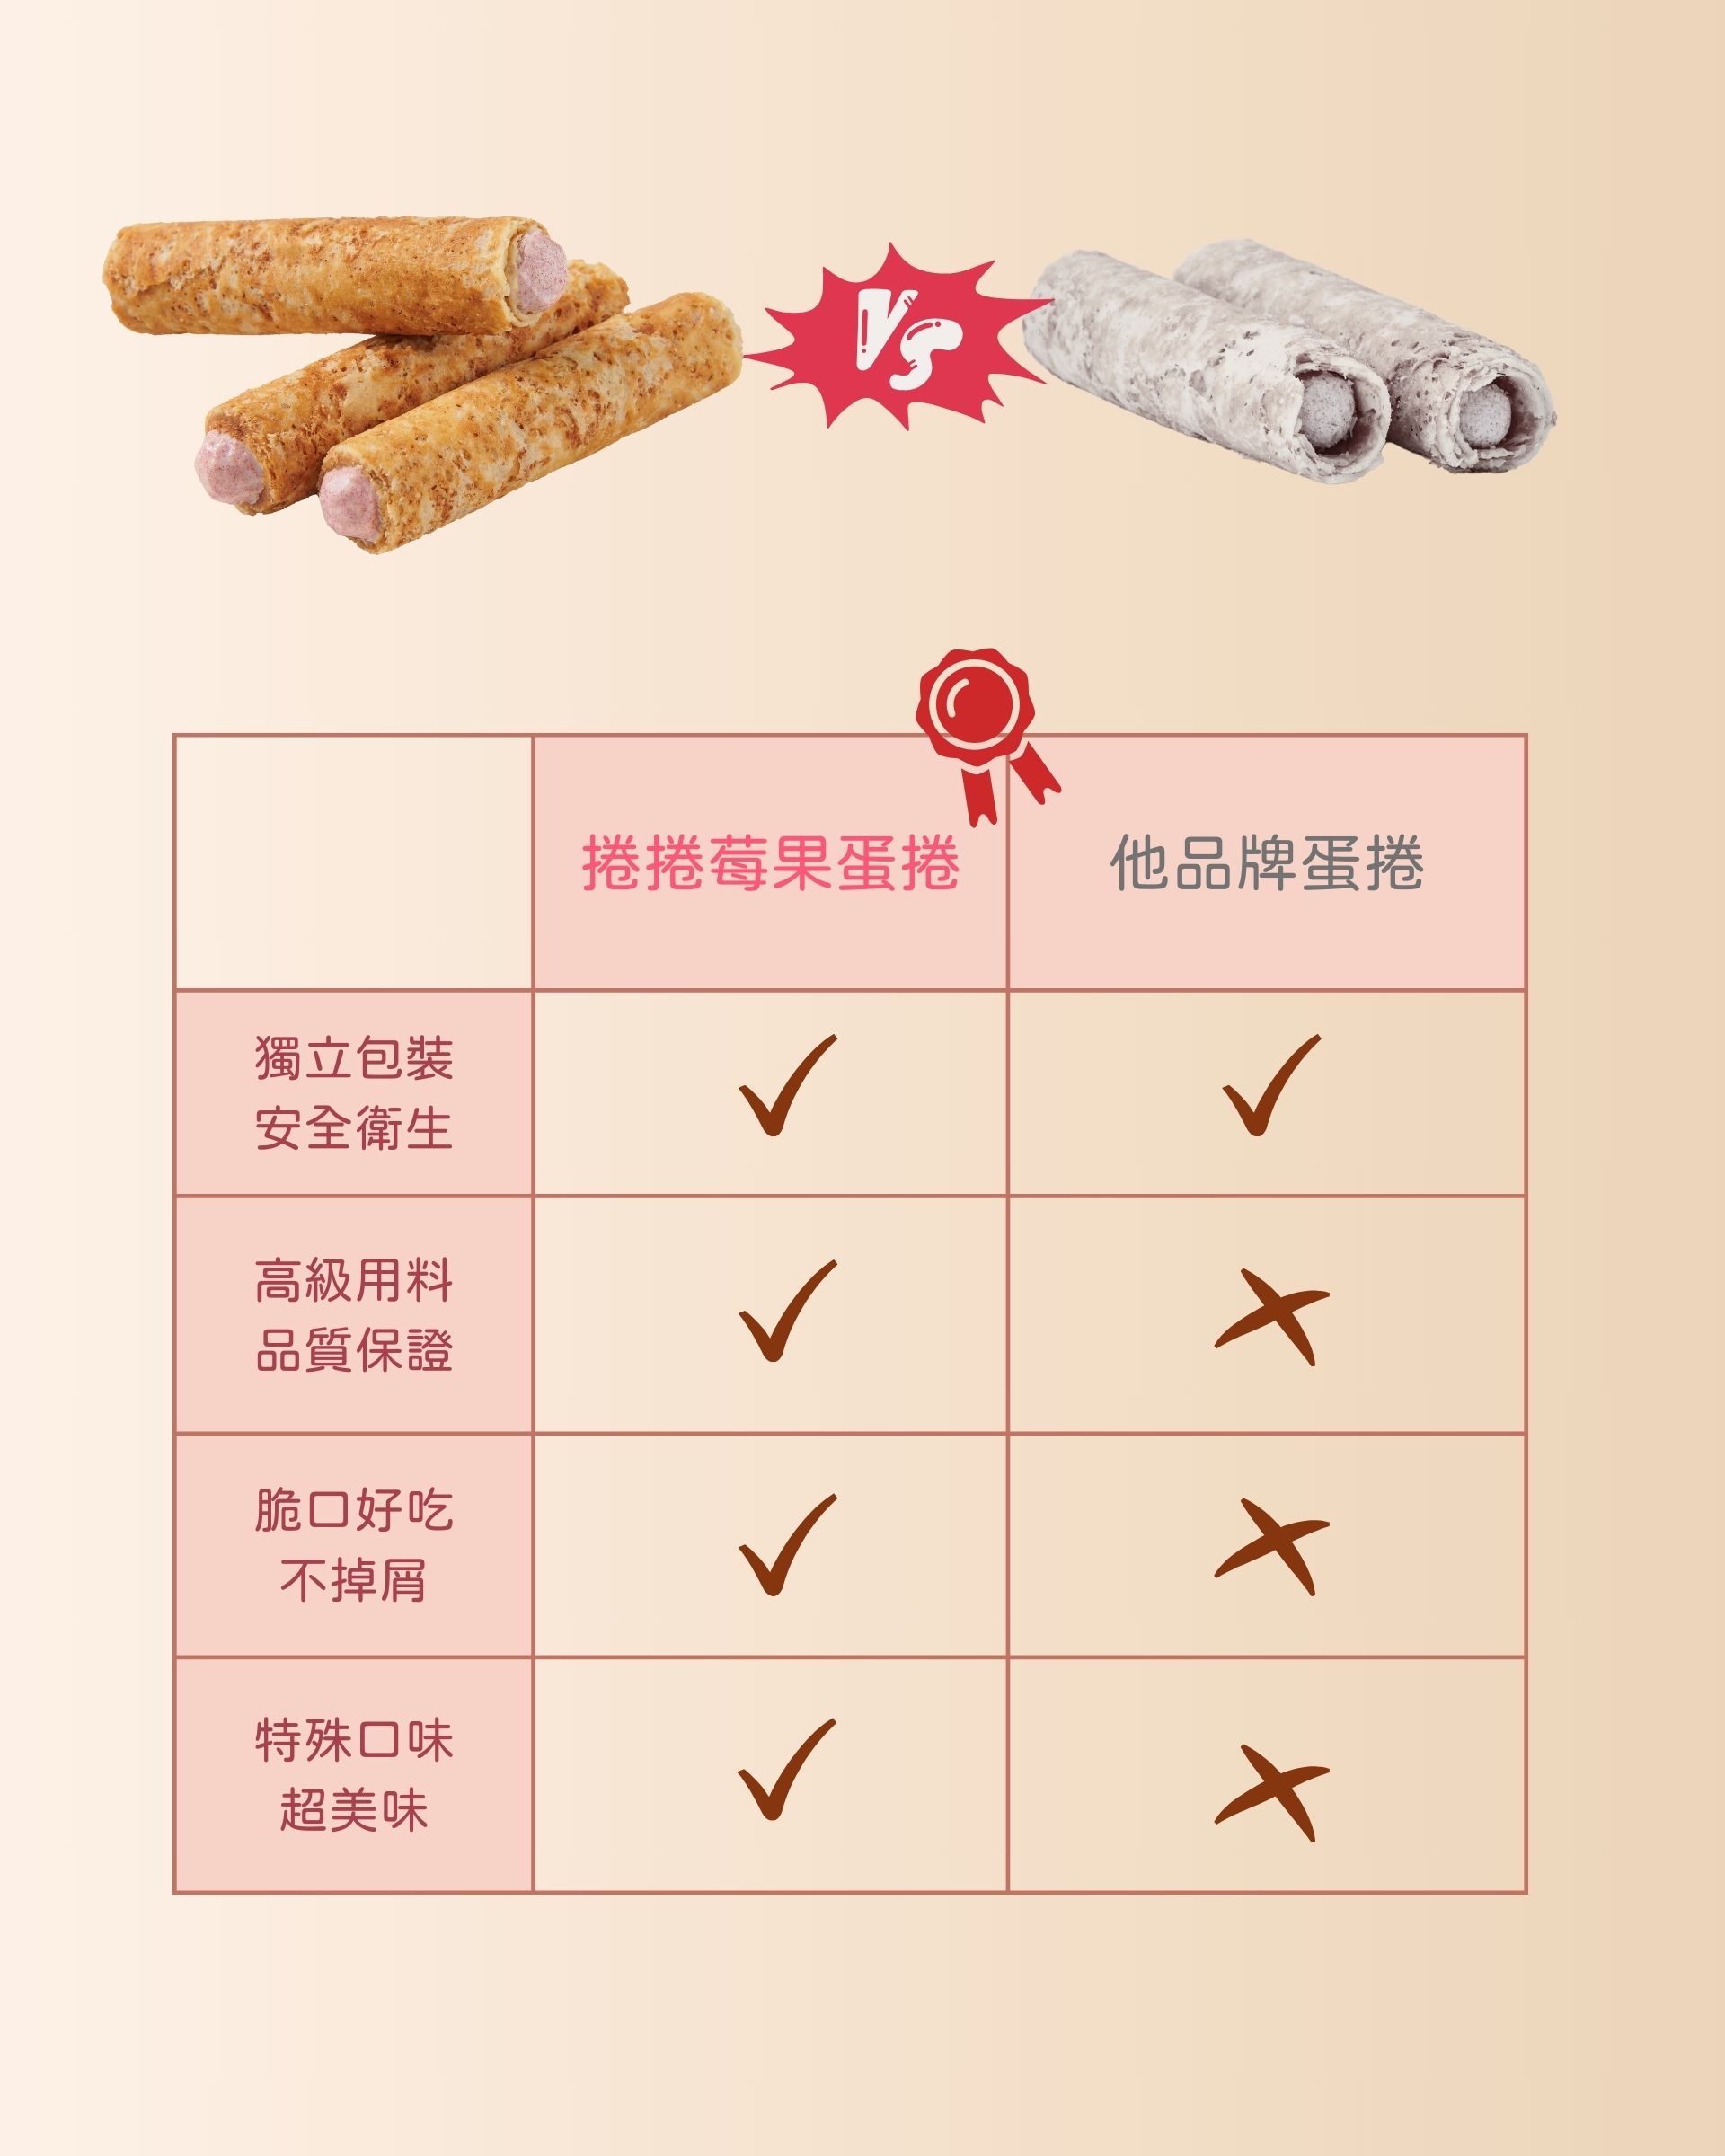 【康成食品】捲捲莓果禮盒(12支/盒) 綜合5種莓果內餡 低糖爆餡 成分單純